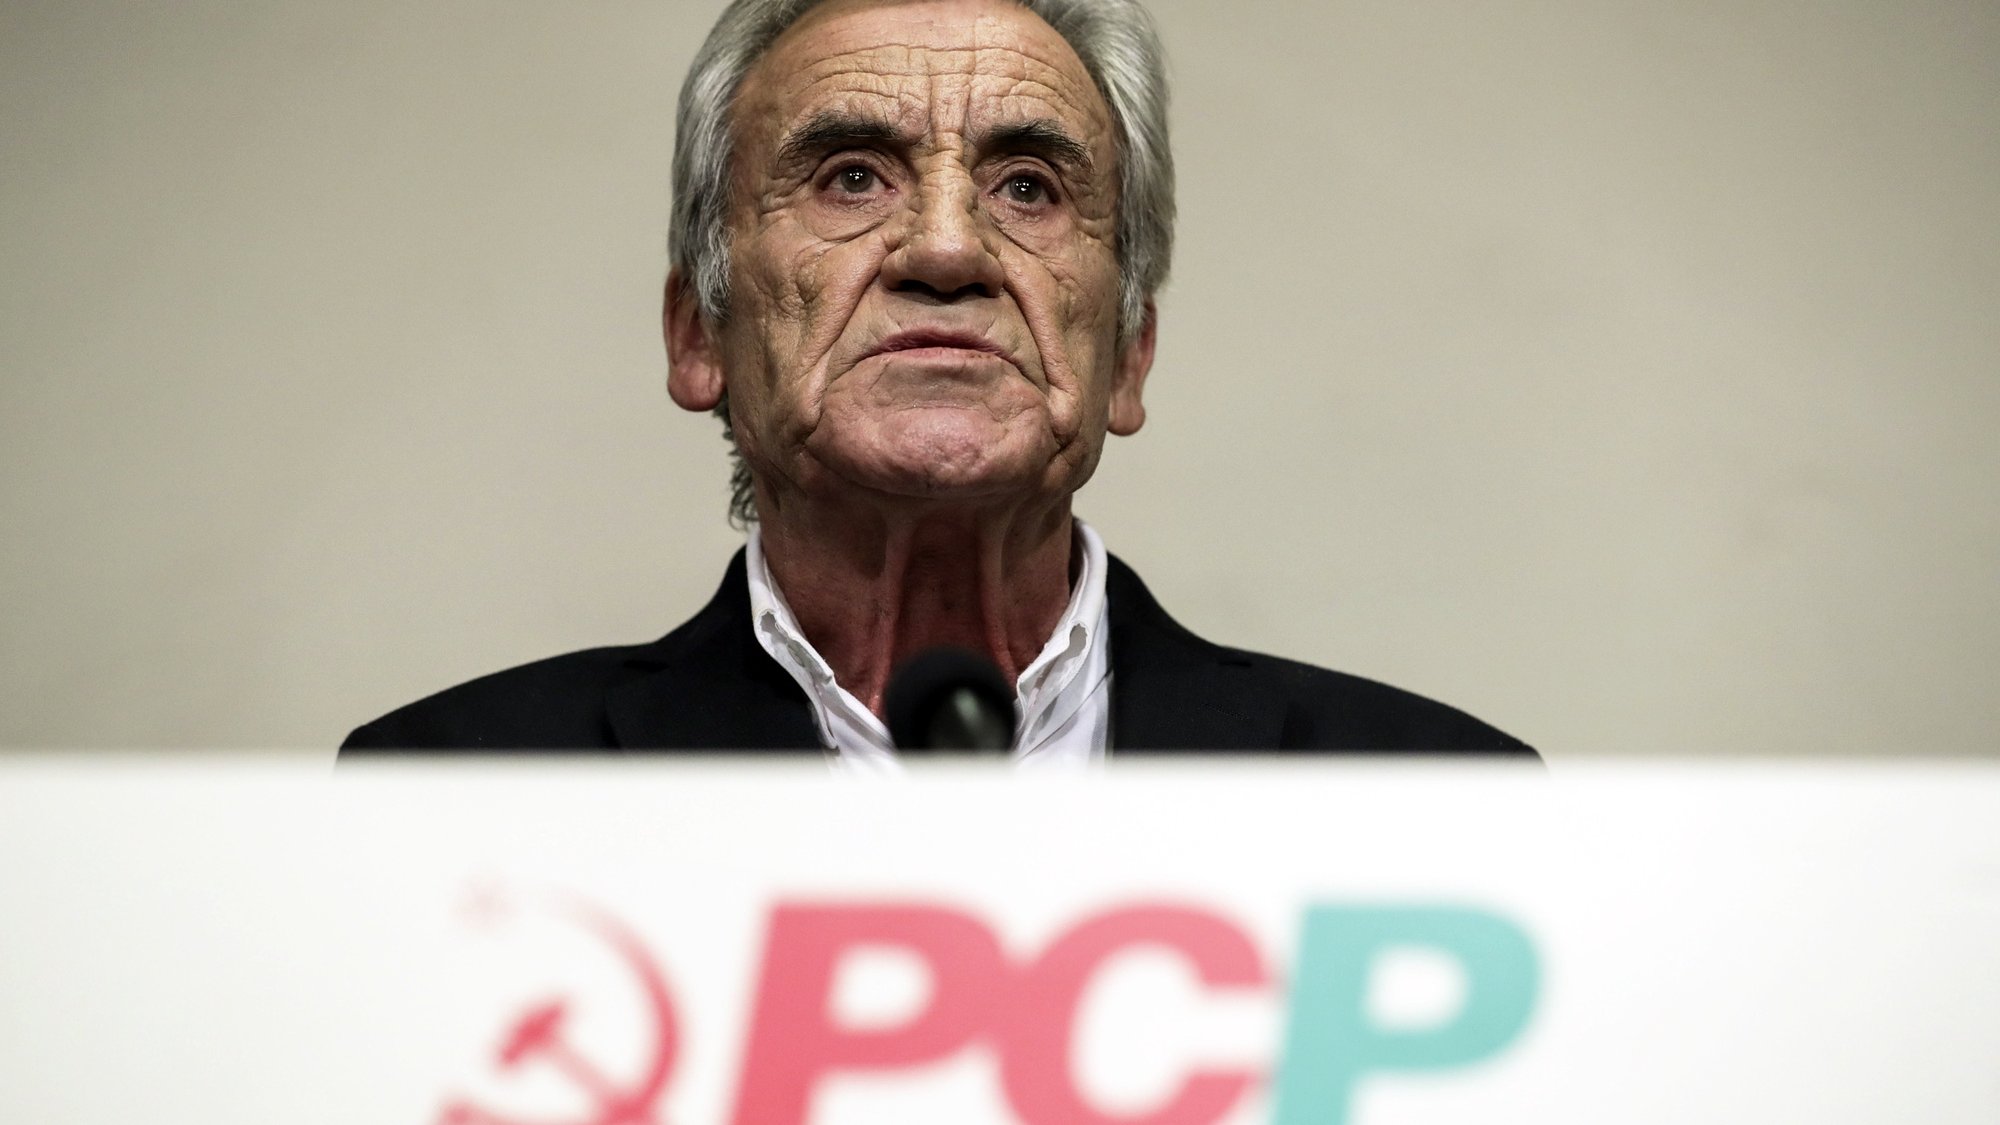 O secretário-geral do Partido Comunista Português (PCP), Jerónimo de Sousa, durante a conferência de imprensa para apresentação das principais conclusões da reunião do comité central sobre o Orçamento do Estado para 2022, na sede do partido em Lisboa, 25 de outubro de 2021. O PCP vai votar contra a proposta de Orçamento do Estado para 2022 (OE2022) na generalidade, anunciou hoje o secretário-geral do partido Jerónimo de Sousa, sustentando que o país “não precisa de Orçamento qualquer”. TIAGO PETINGA/LUSA